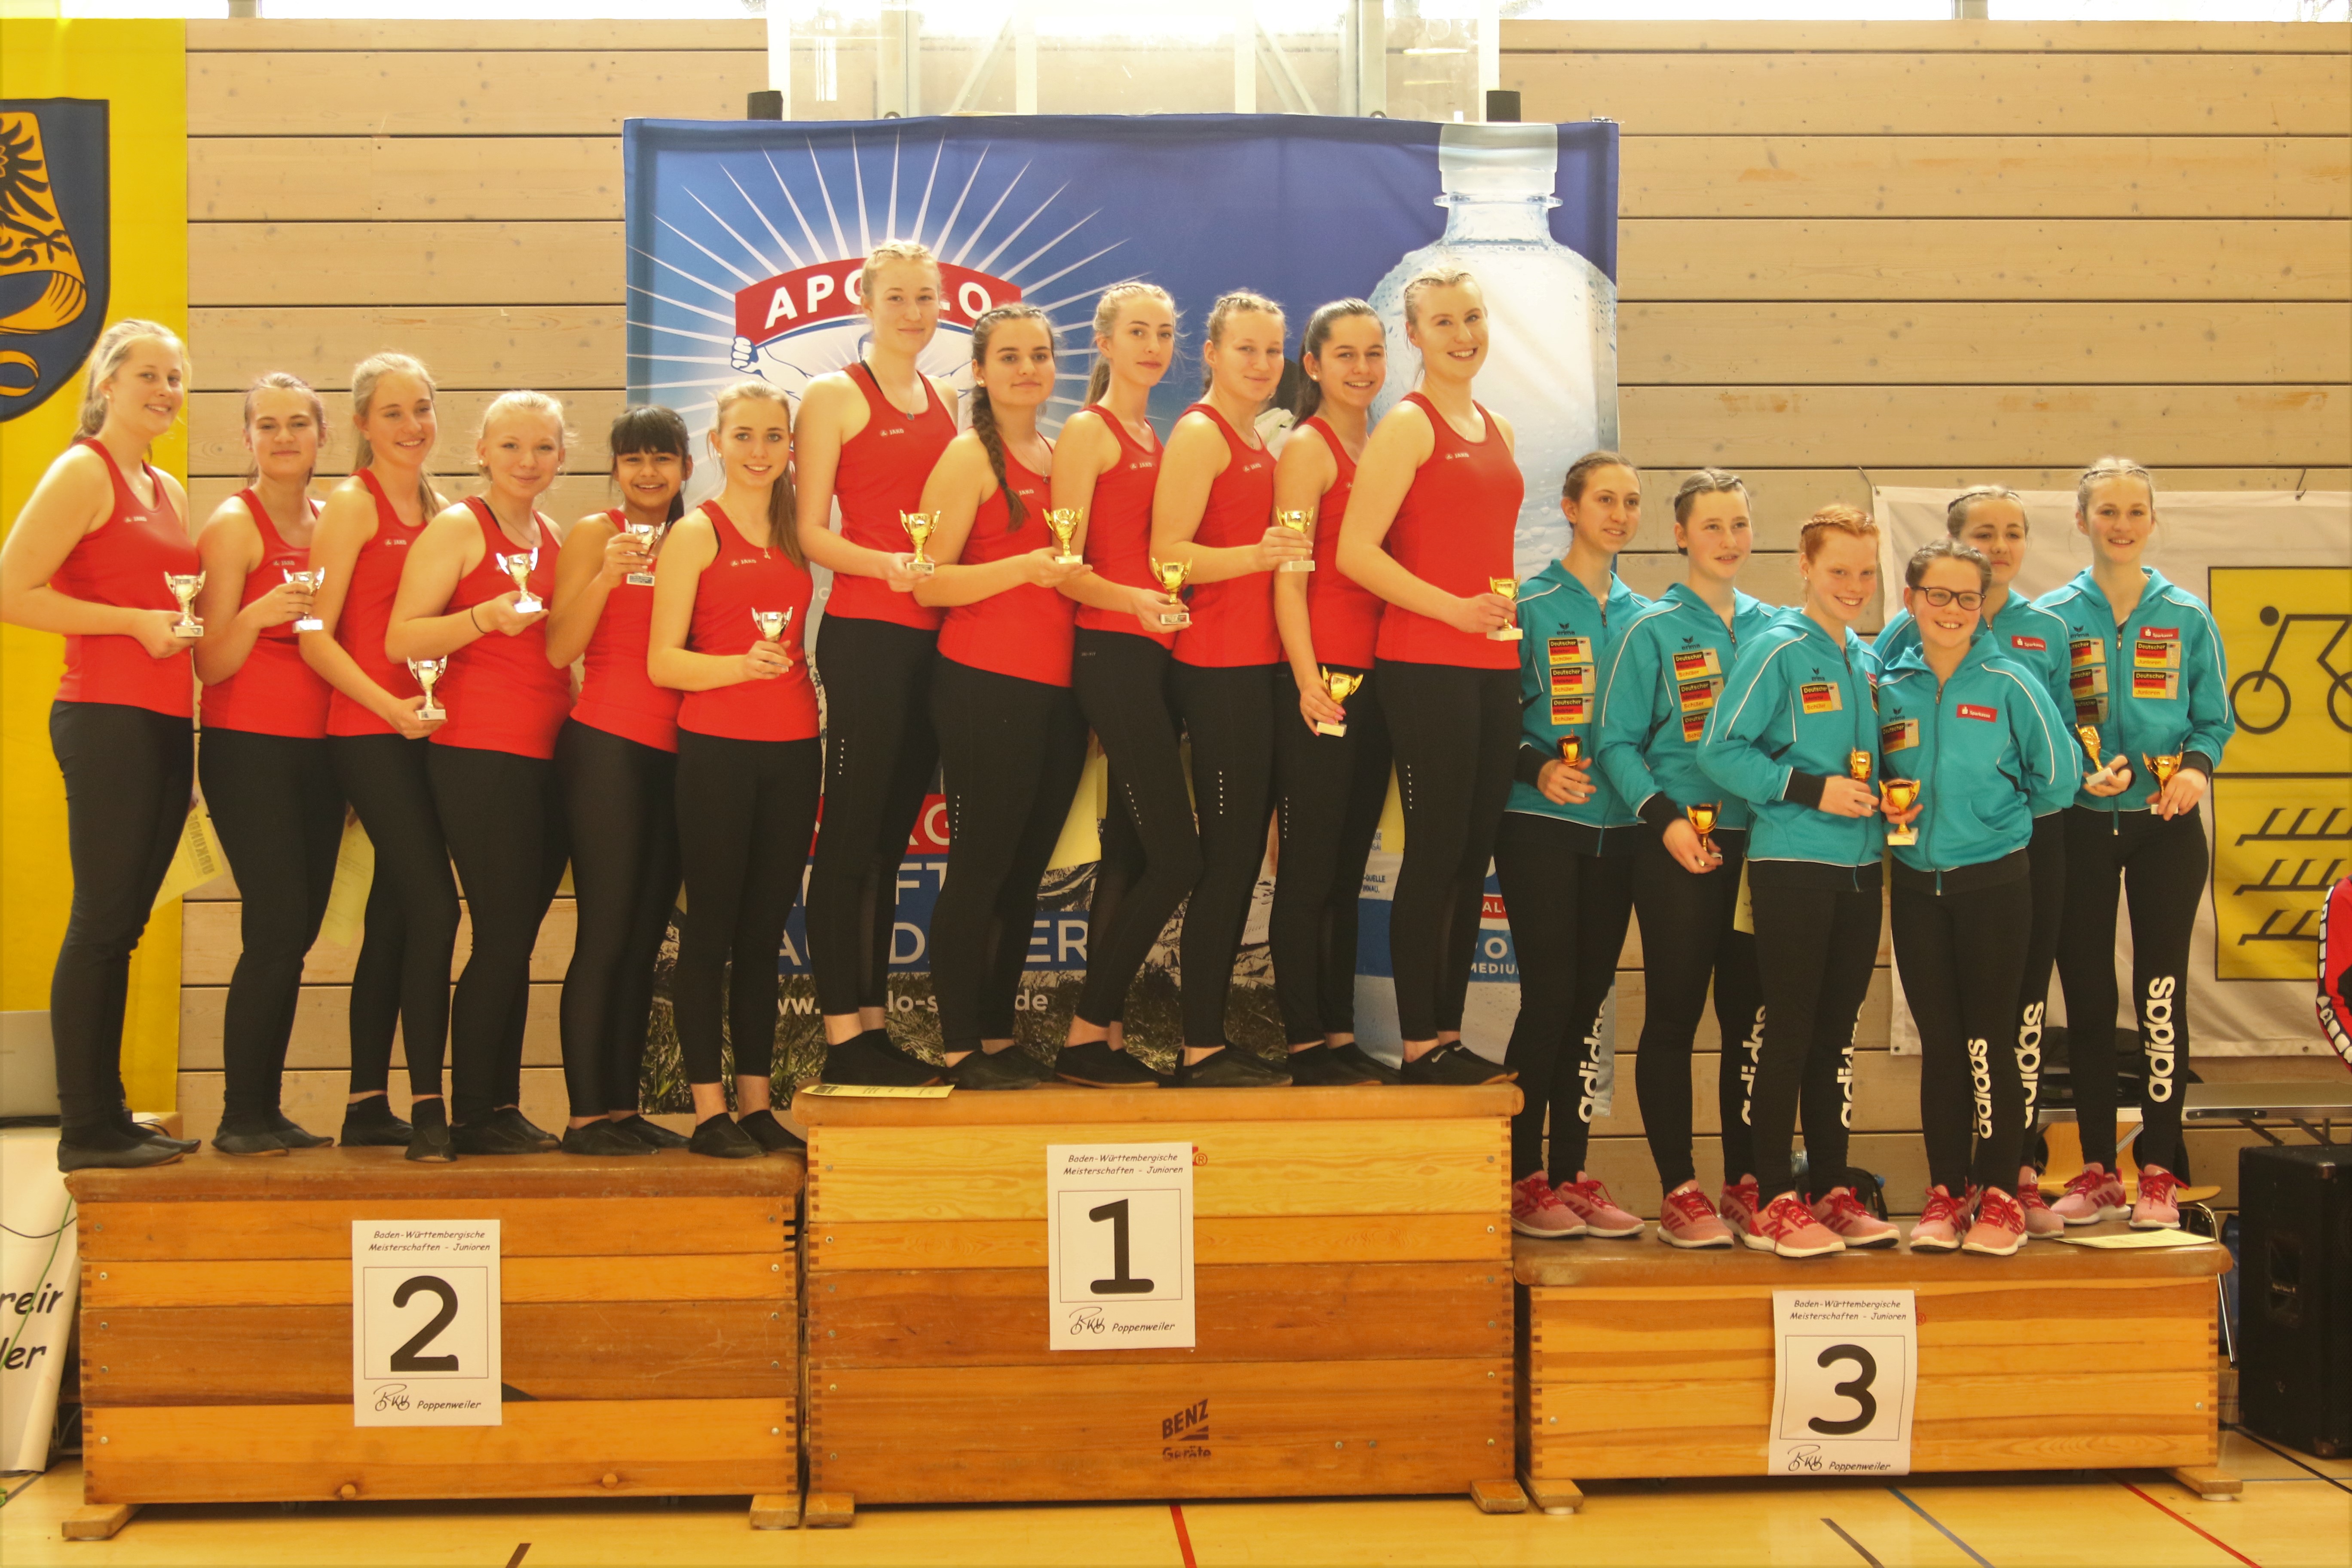 Baden-Württembergische Meisterschaft der Junioren am 17.03.19